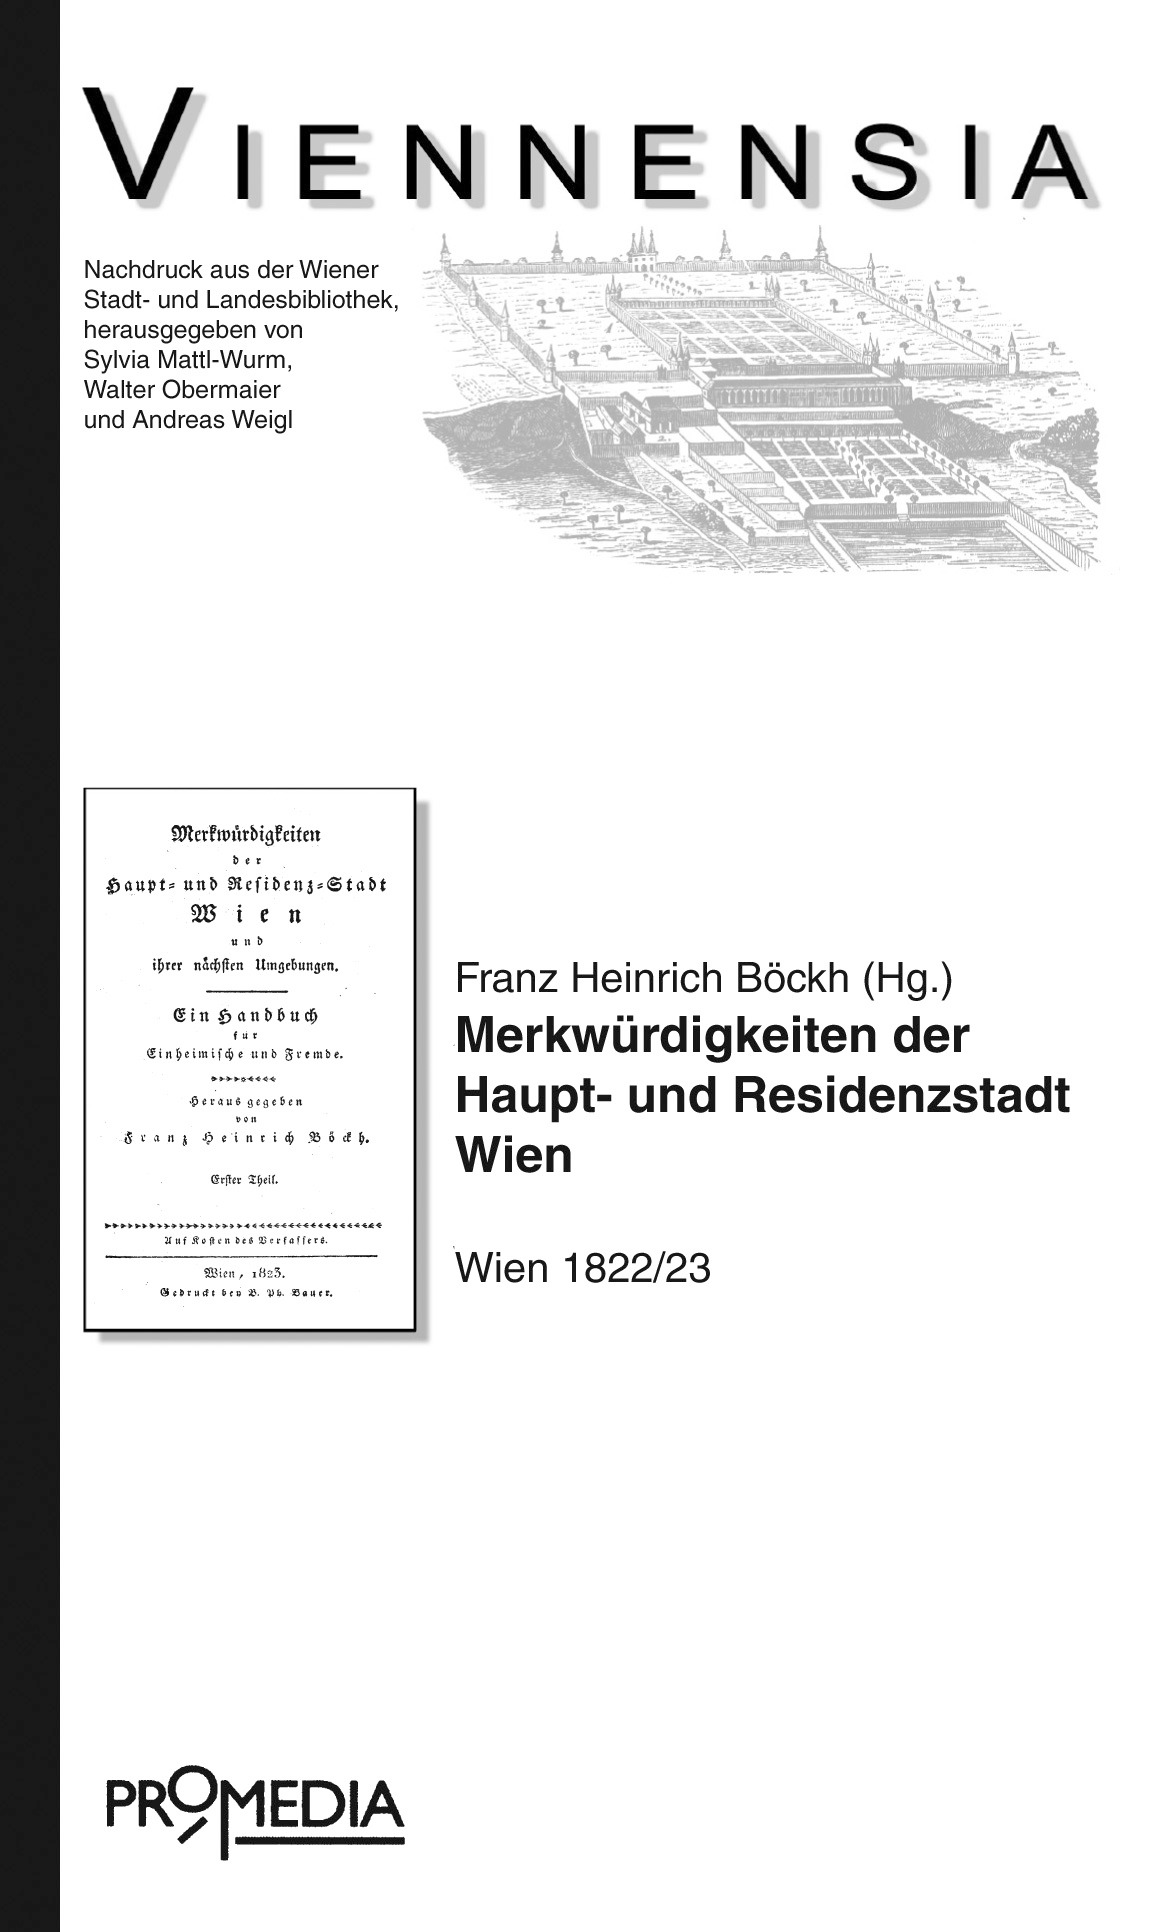 [Cover] Merkwürdigkeiten der Haupt- und Residenzstadt Wien und ihrer nächsten Umgebung: Ein Handbuch für Einheimische und Fremde